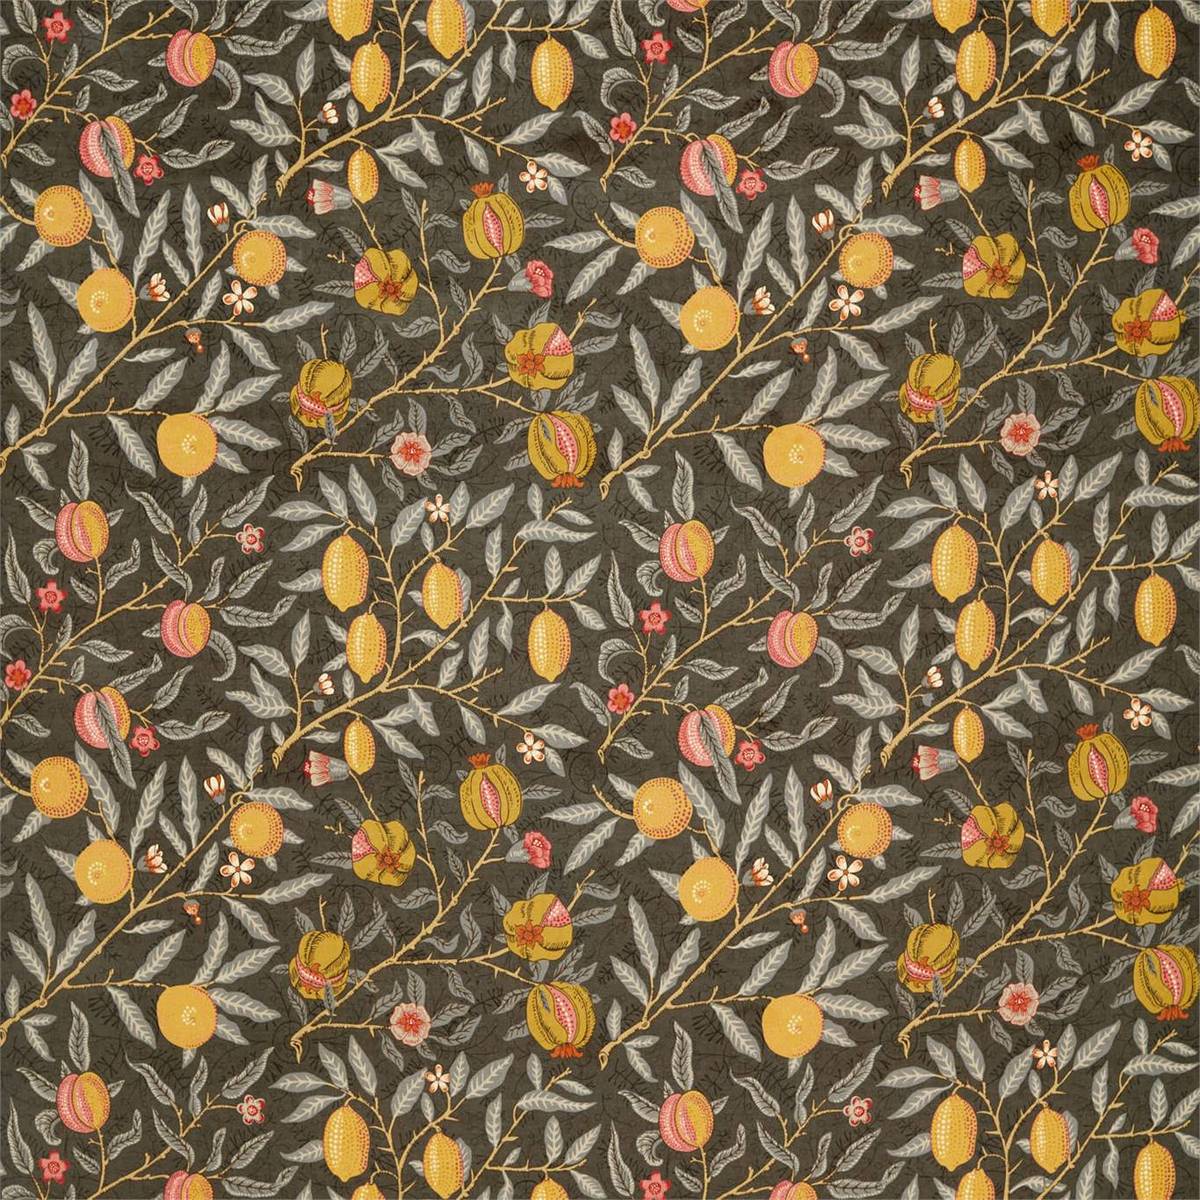 Fruit Velvet Walnut/Bullrush Fabric by William Morris & Co.